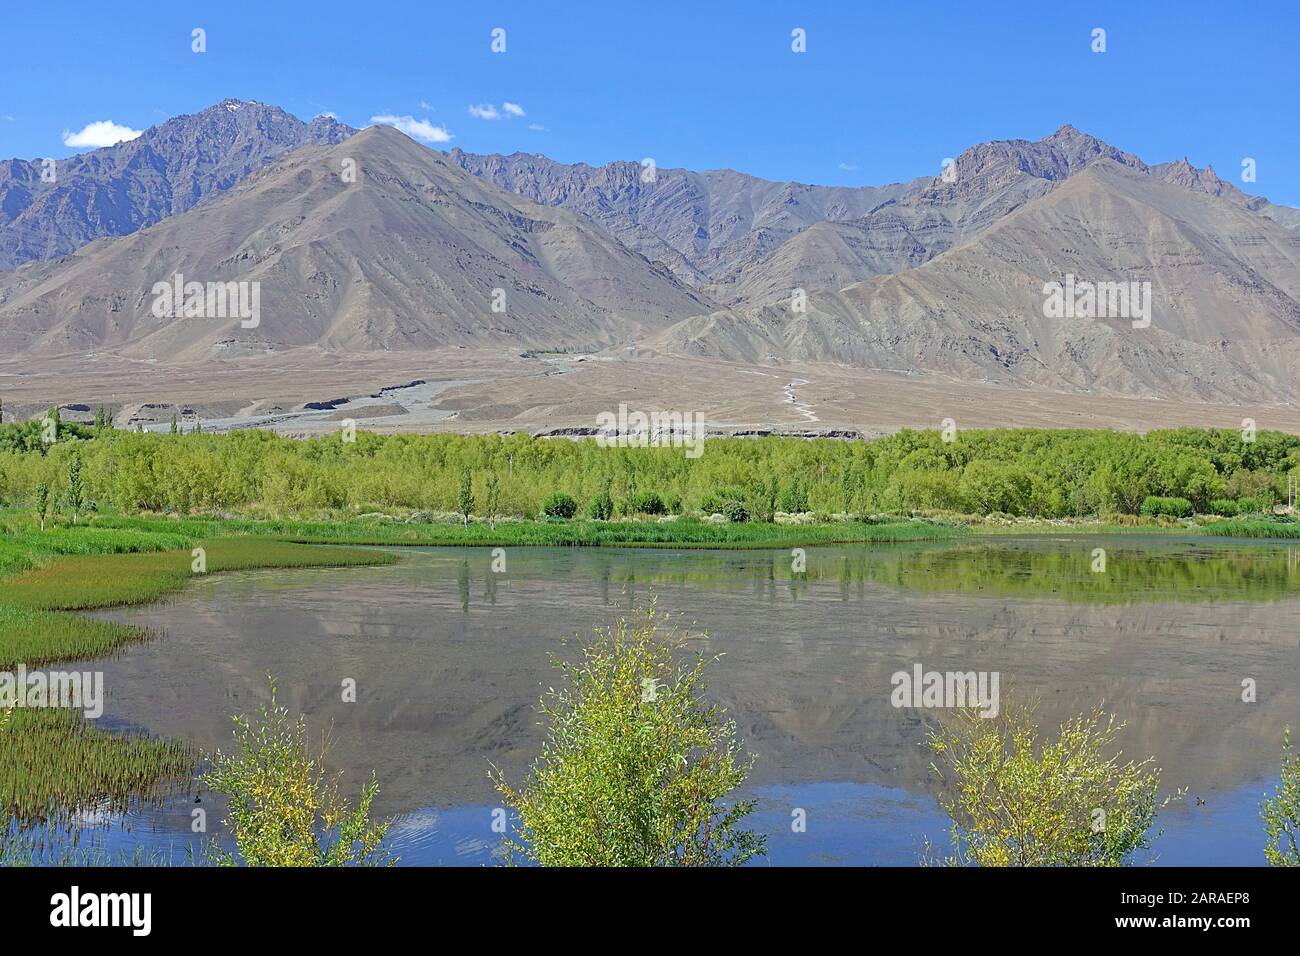 Lacs de la rivière Indus avec des montagnes nues derrière à côté de Leh la capitale commune et la plus grande ville de Ladakh - Inde 2019 Banque D'Images